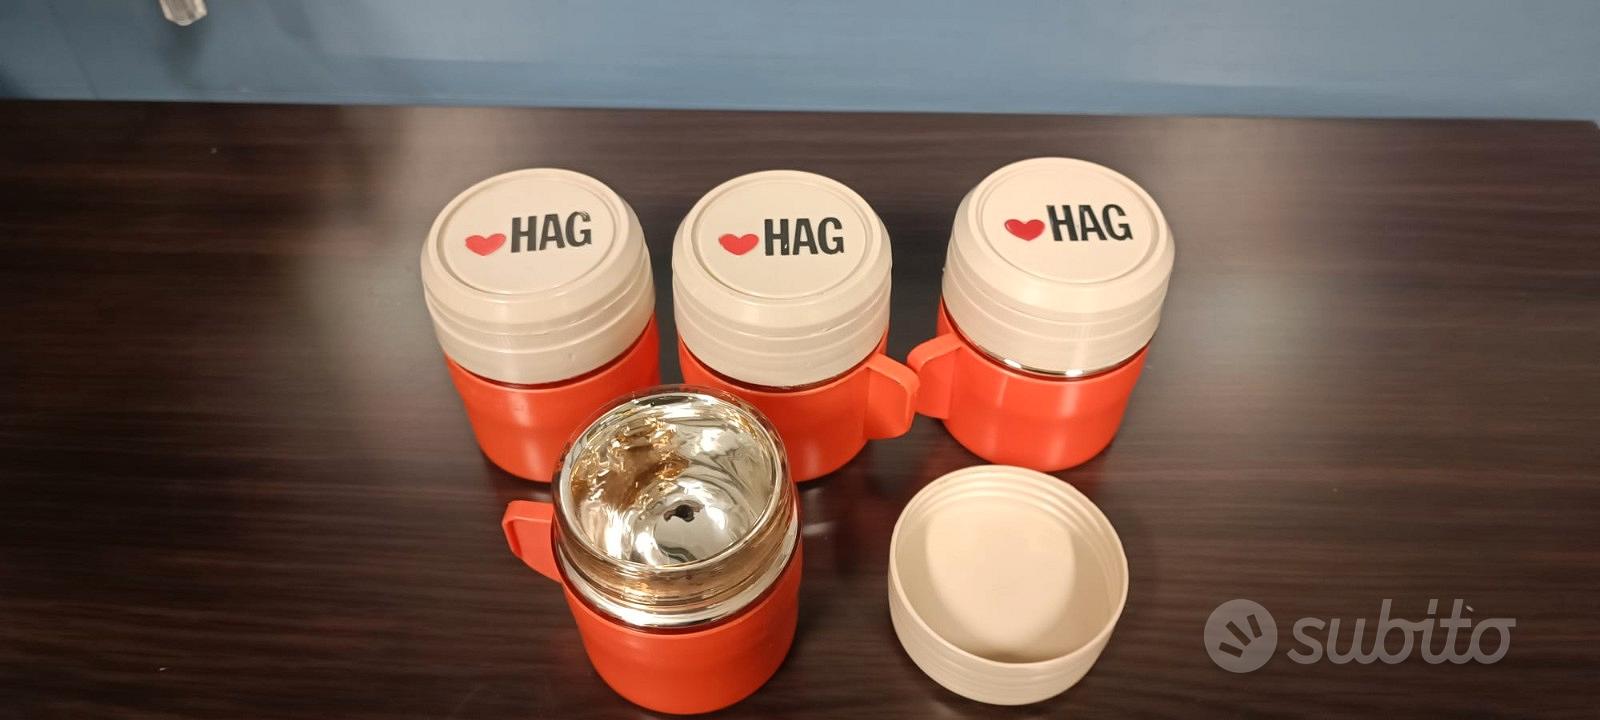 Tazzina termica HAG Thermos caffè - Arredamento e Casalinghi In